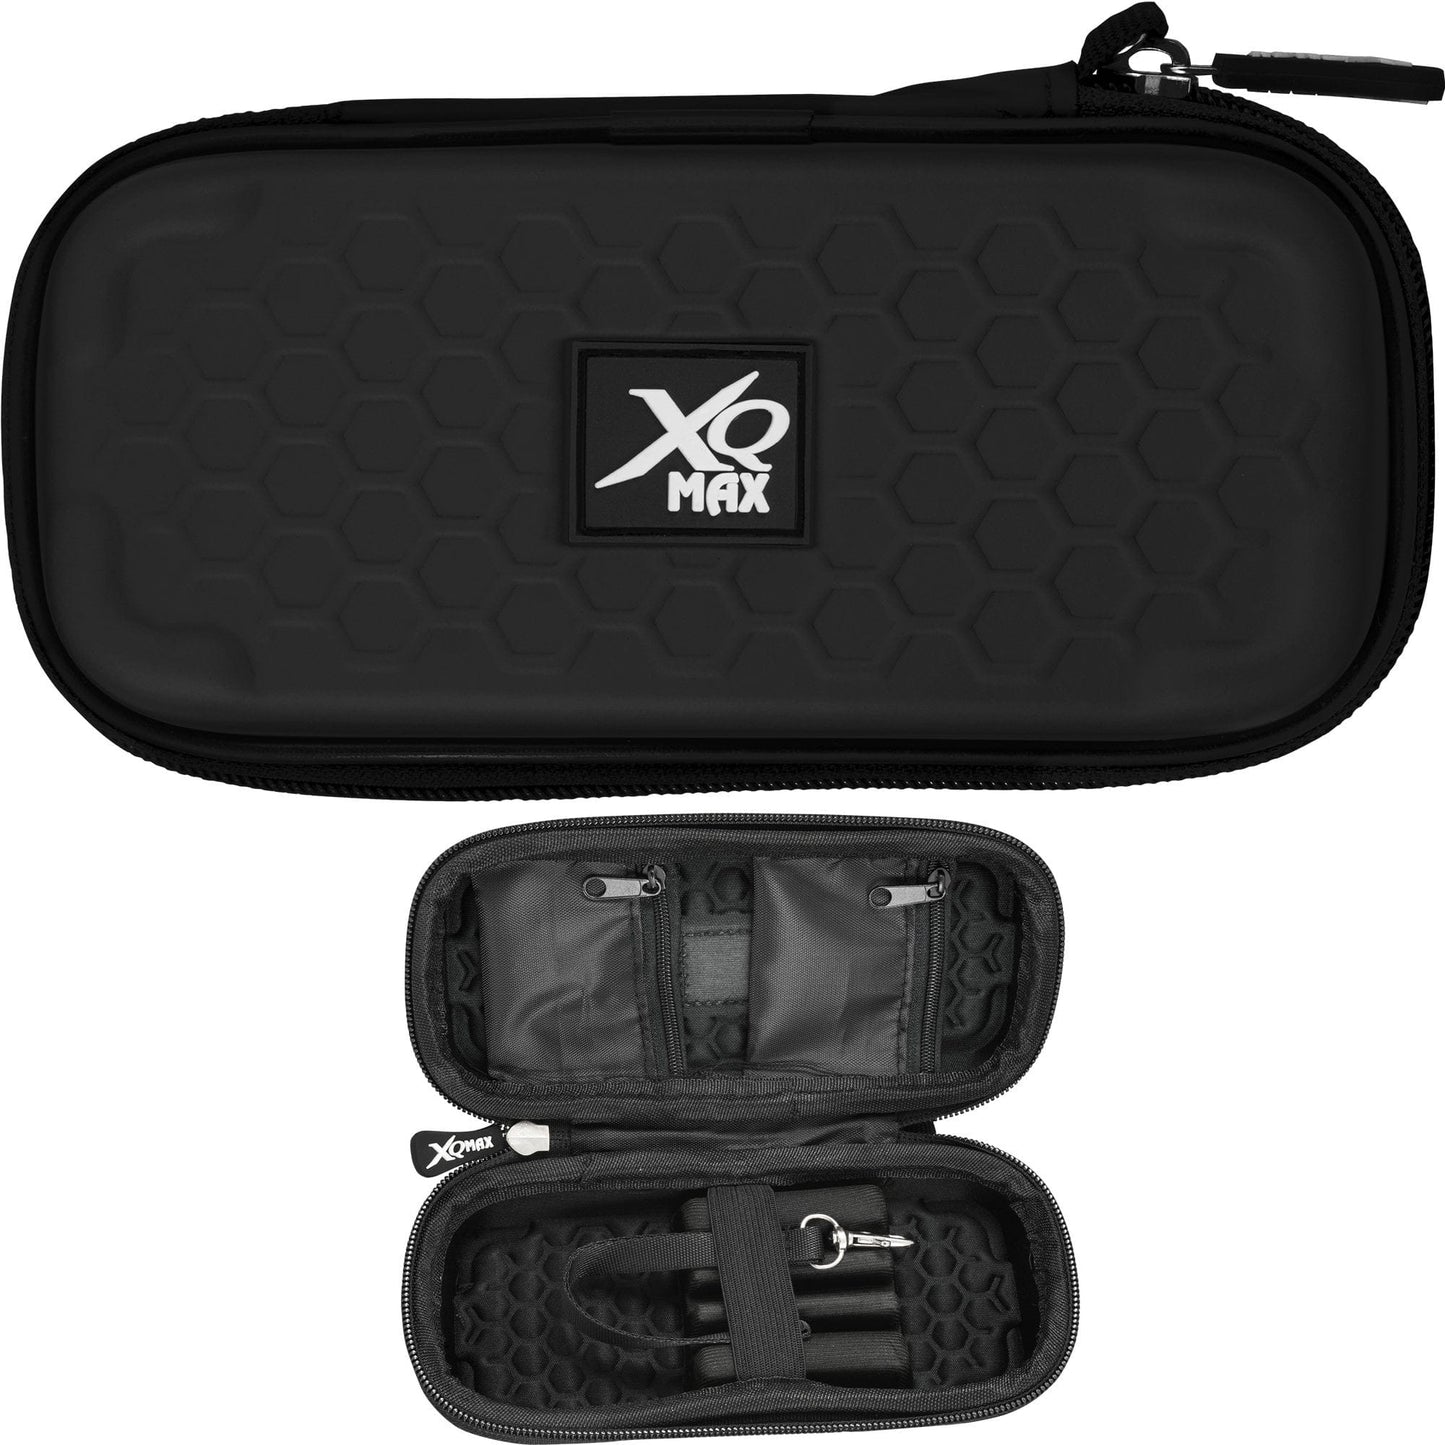 XQMax Darts Wallet - Compact - Small Black